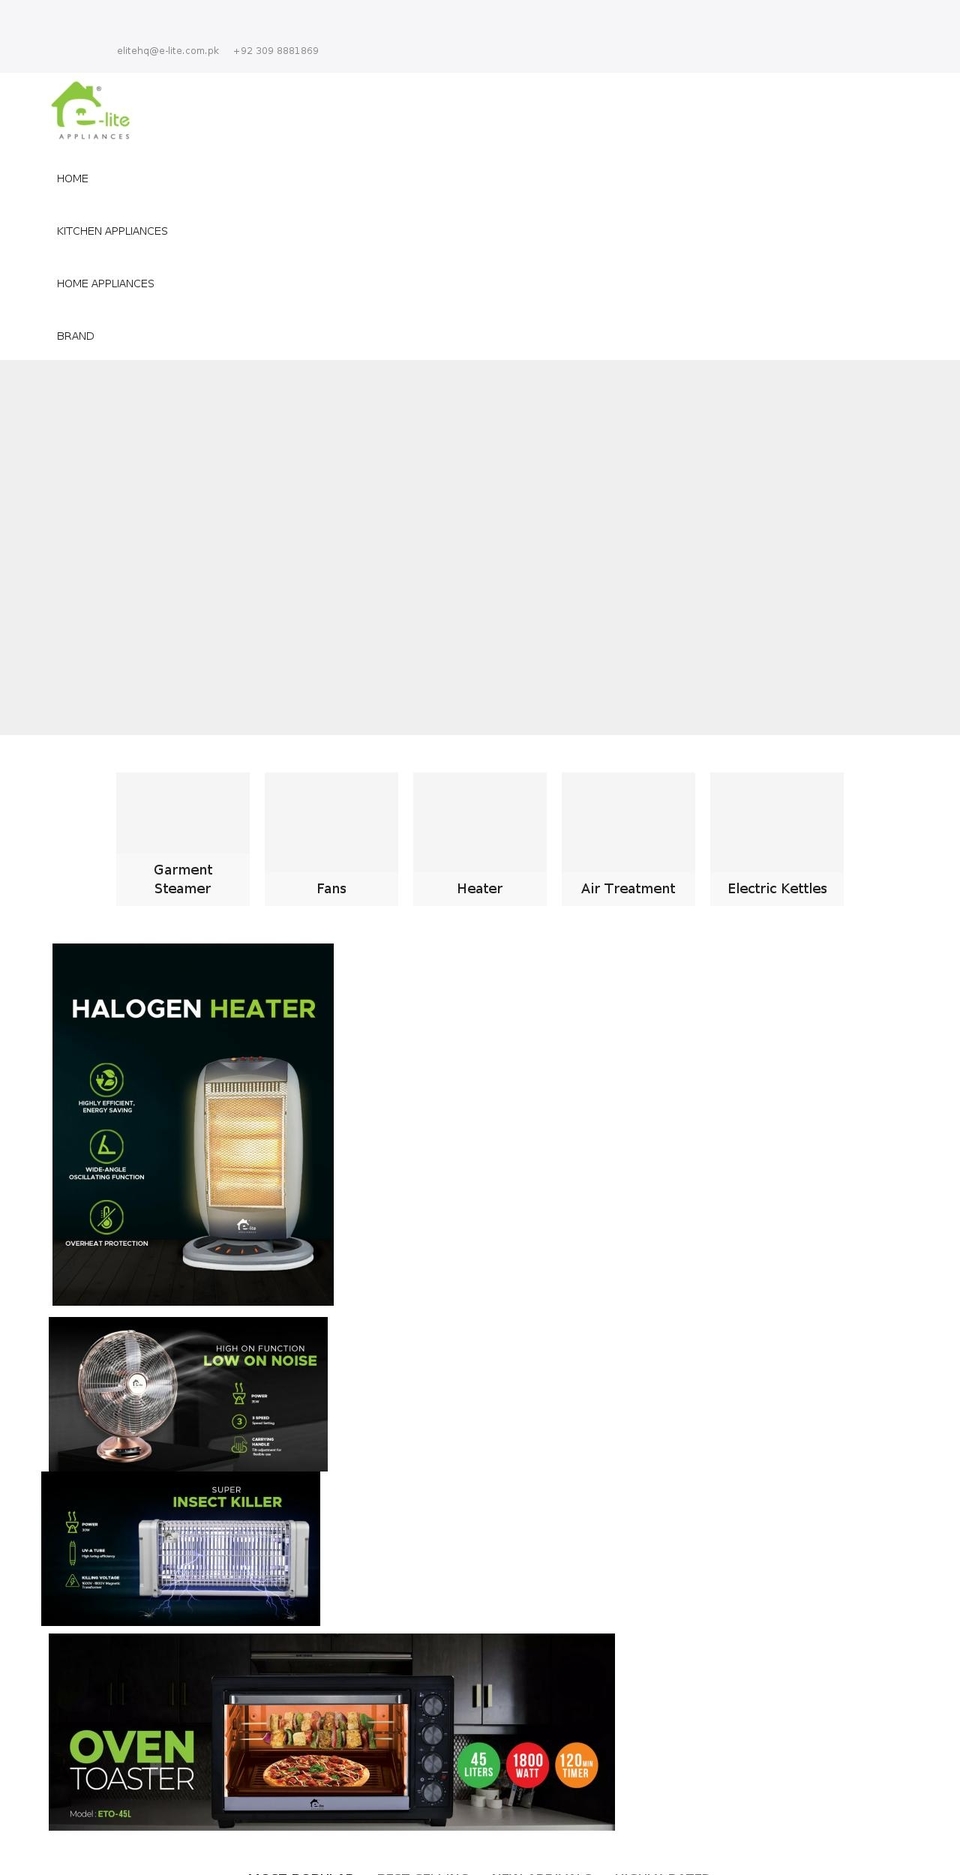 e-lite.com.pk shopify website screenshot